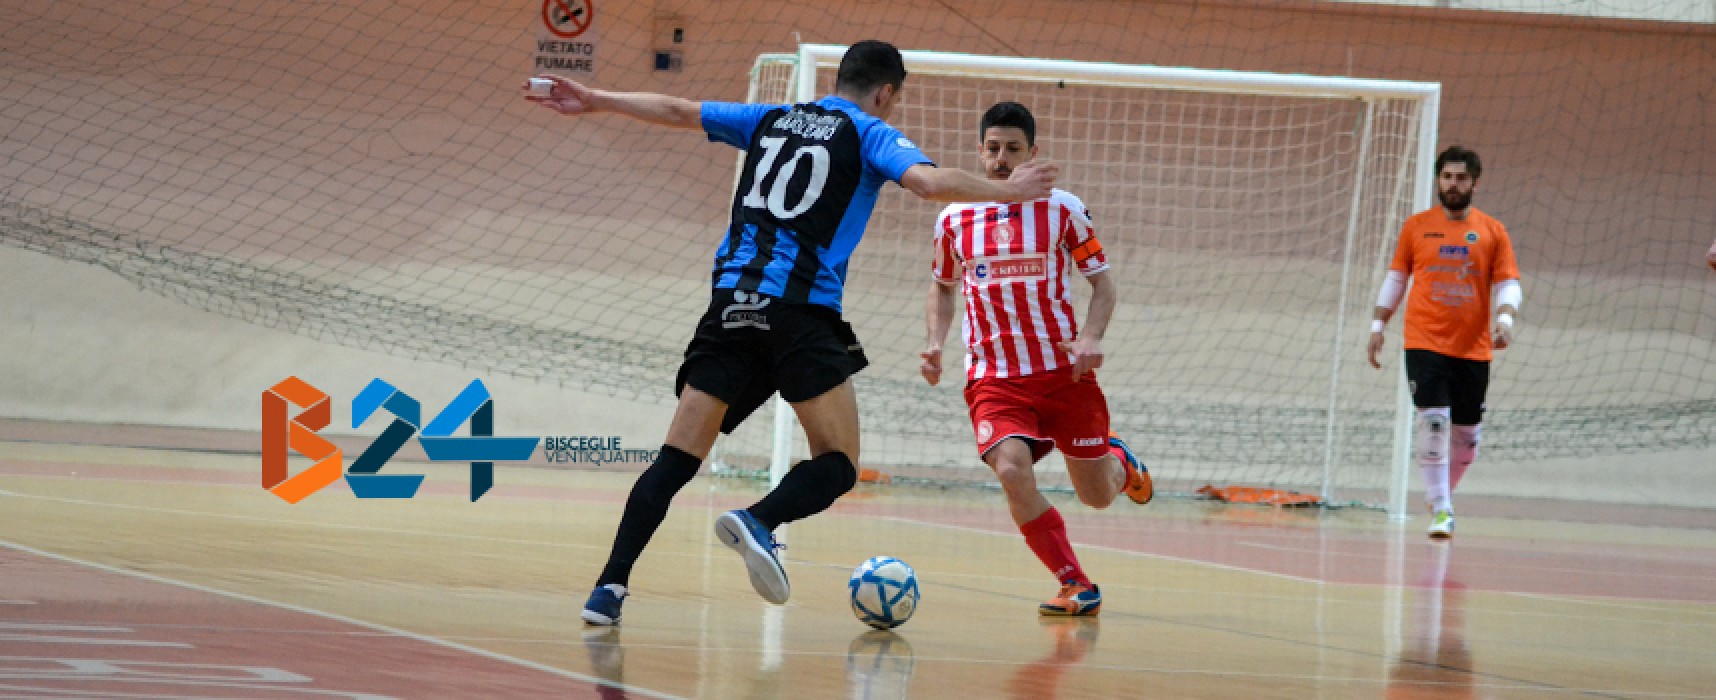 Futsal Bisceglie, gli highlights della storica promozione in A2/VIDEO